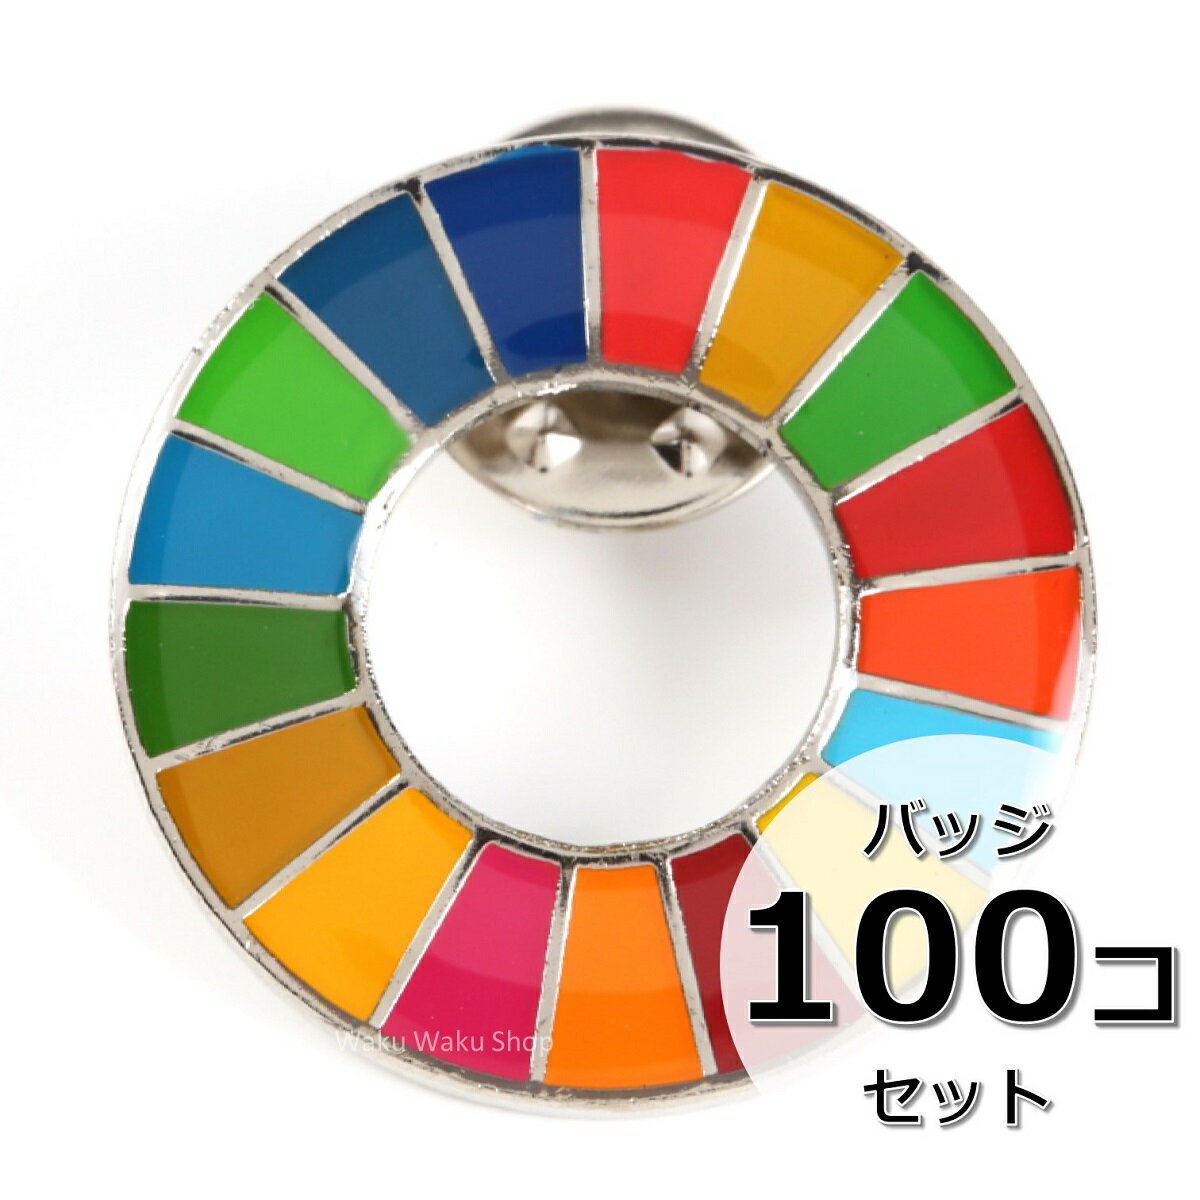 【色調への対応】SDGsの17の目標に対しては、国連規定にてそれぞれの色調が設定されております。その色調に正確に対応しているピンバッジです。ピンの位置は着用時に1番が上に来るように調整されています。 【数量割引】複数個セットも販売しております。会社でのご使用やプレゼントの際などにご活用ください。 【サイズ】幅：25mm、厚み：1.5mm ※領収書発行が必要なお客様は宛名・但書のご希望をご連絡くださいませ。